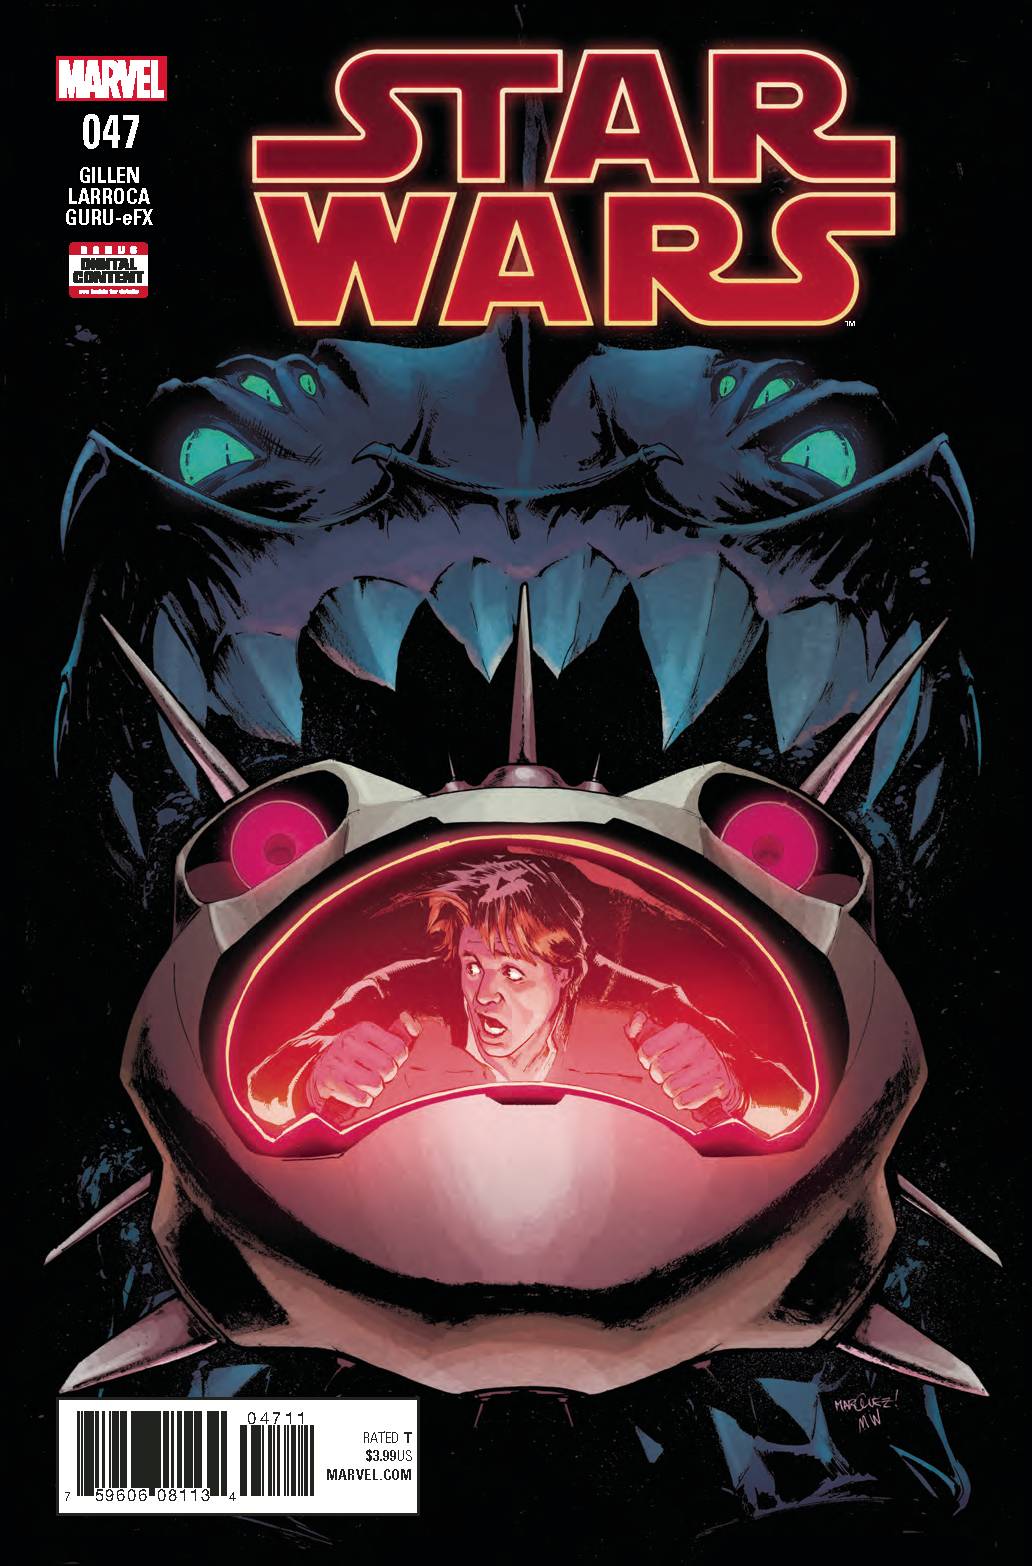 STAR WARS VOL 4 (2015) #47